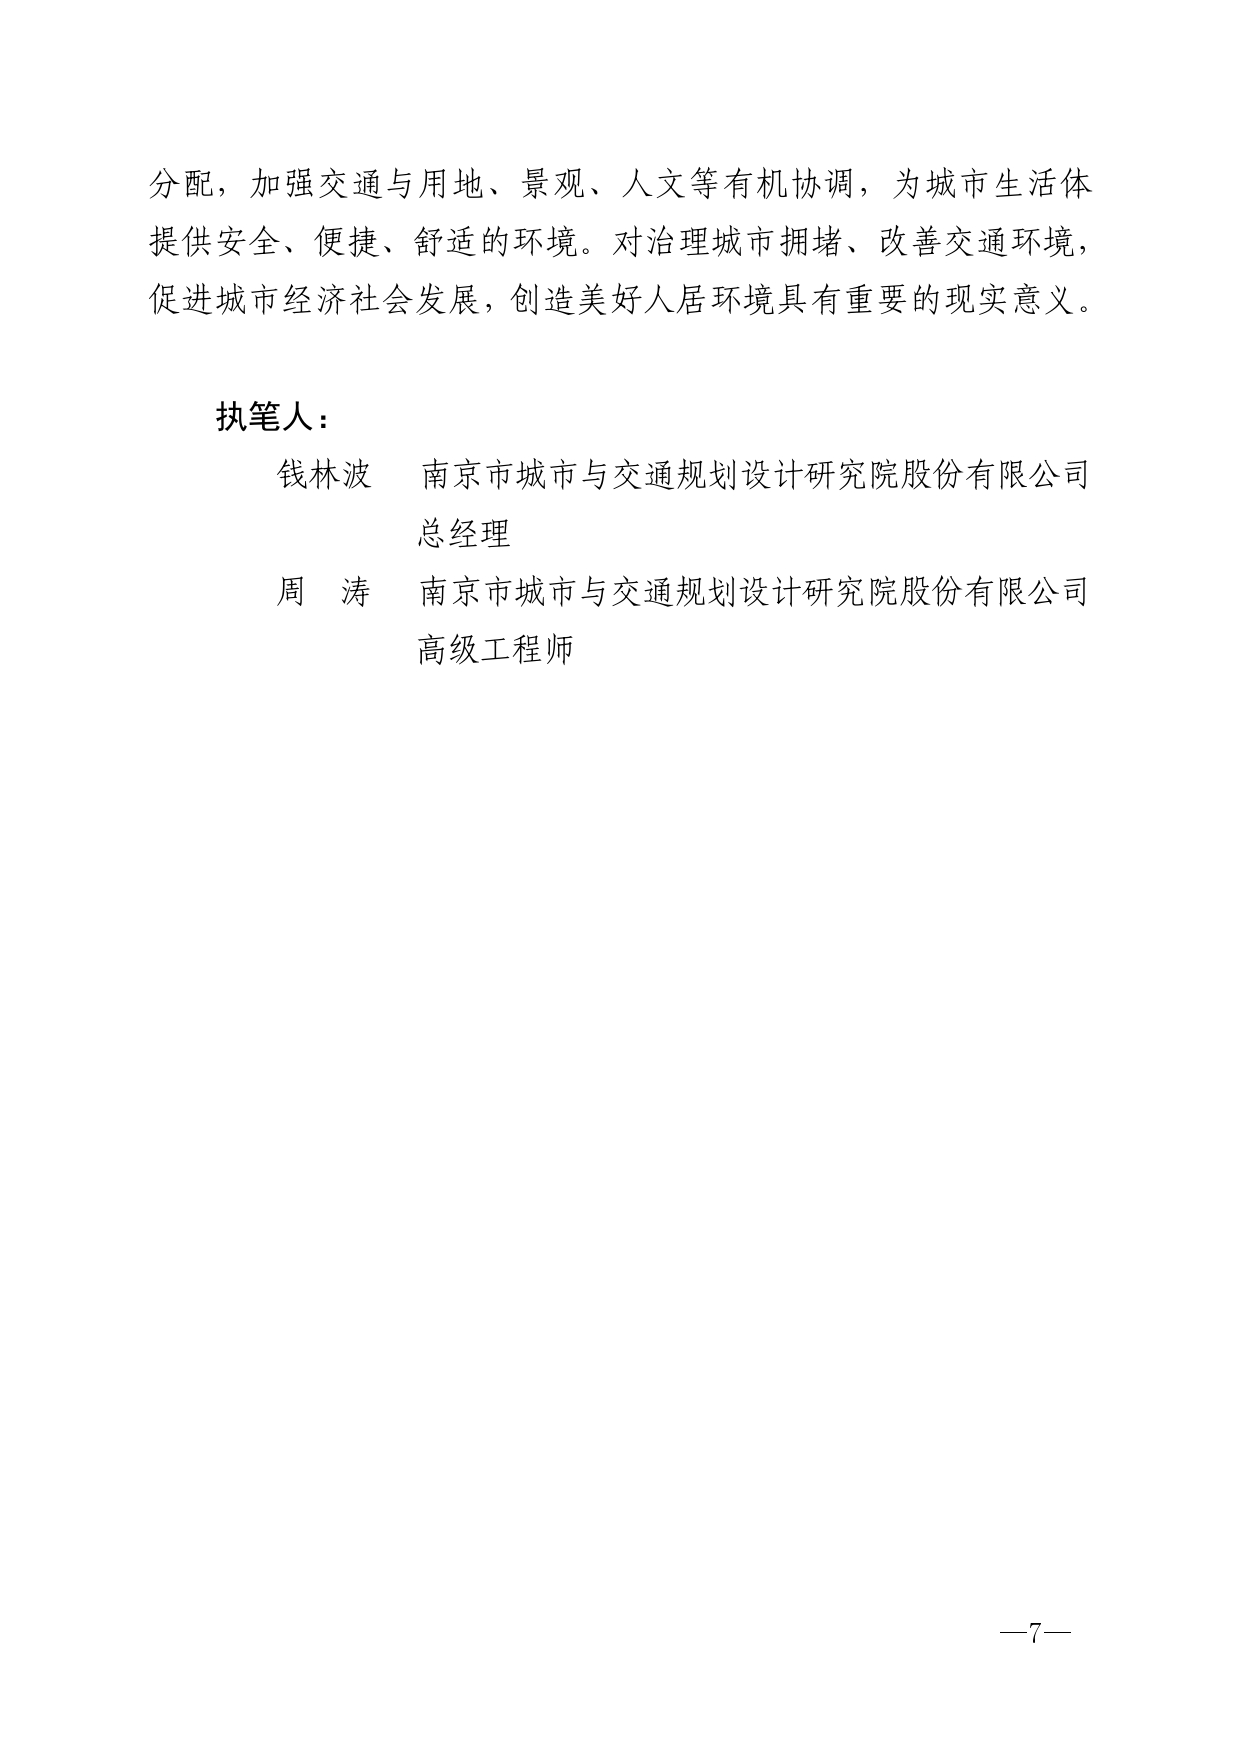 2022年第2期（关于提升南京城市交通精细化设计的建议） - 印刷版_page-0007.jpg